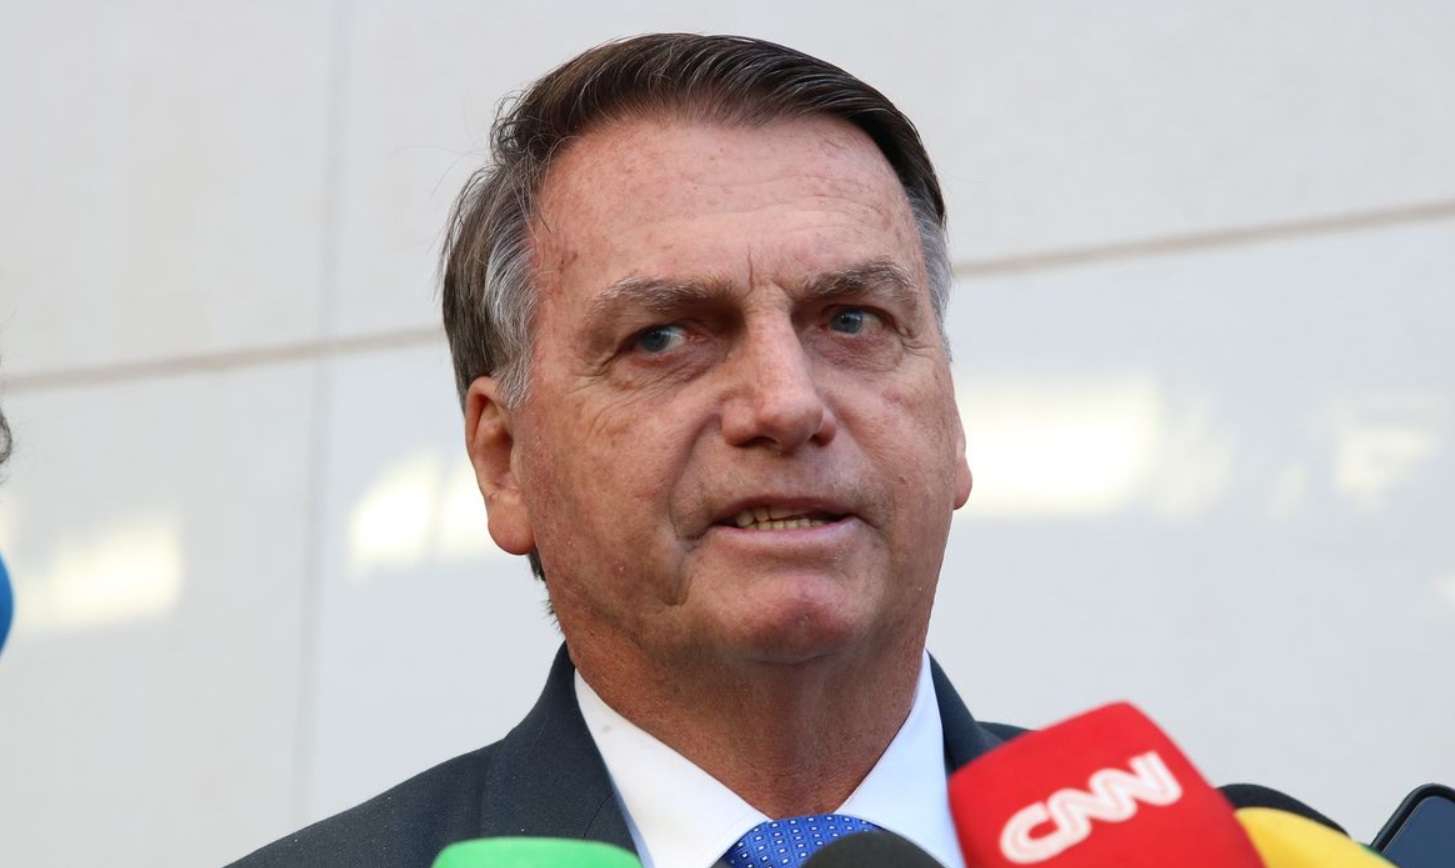 Polícia Federal indicia Bolsonaro em inquérito das joias sauditas